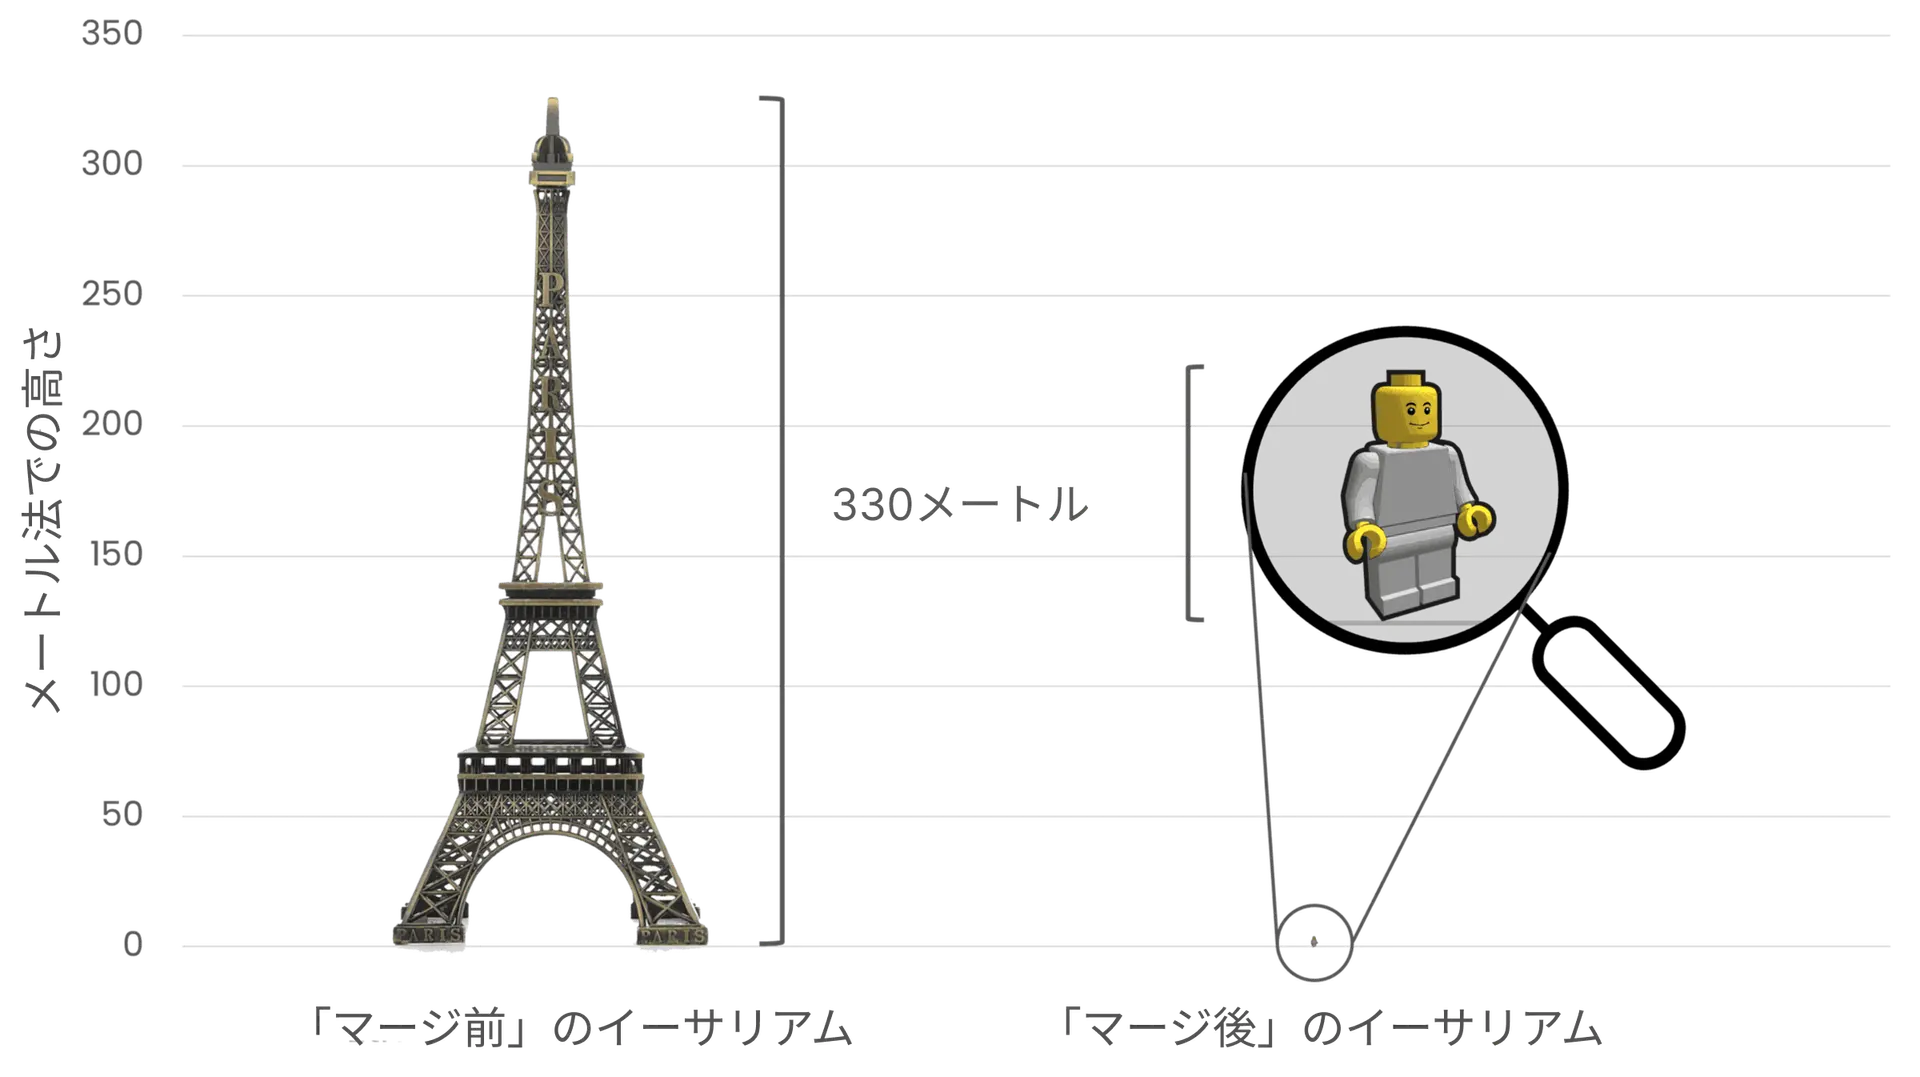 左側のエッフェル塔 (高さ330メートル) は、マージ前の高いエネルギー消費量を表し、右側の高さ 4 cm の小さなレゴ人形を使用してマージ後のエネルギー消費量の劇的な削減を表してイーサリアムのエネルギー消費量を比較しています。